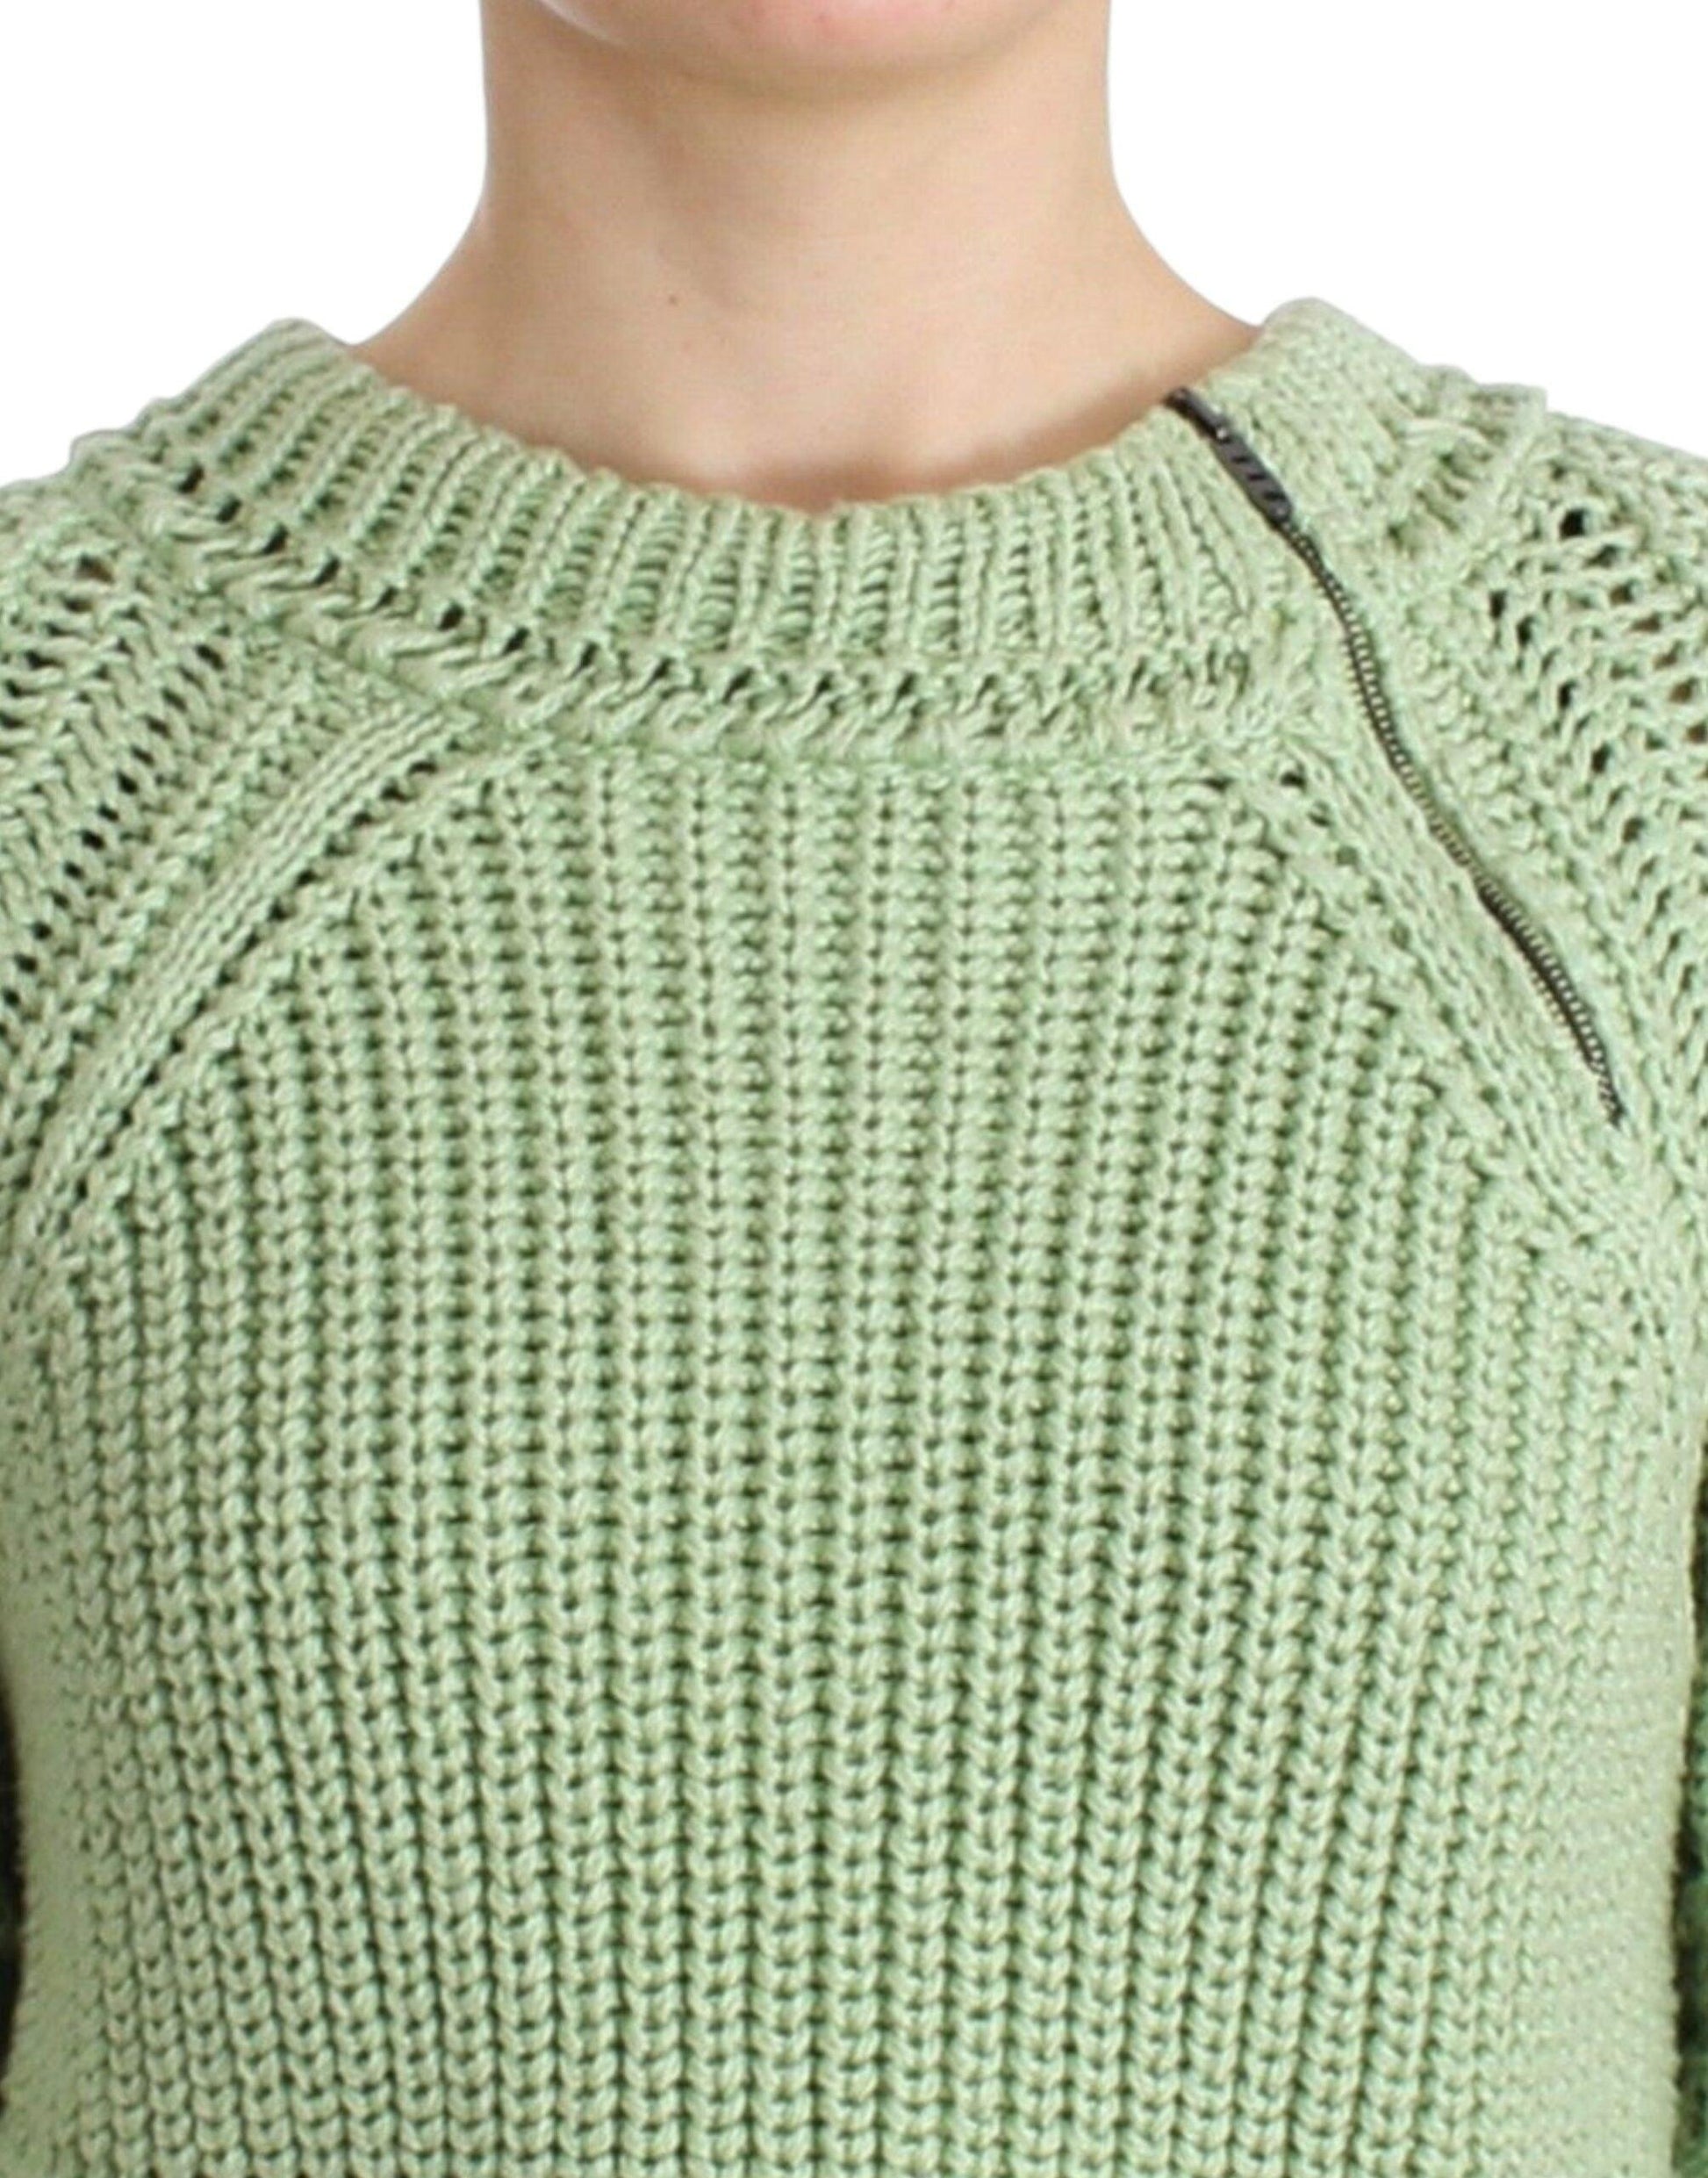 Ermanno Scervino Chic Green Cropped Cotton Sweater - PER.FASHION